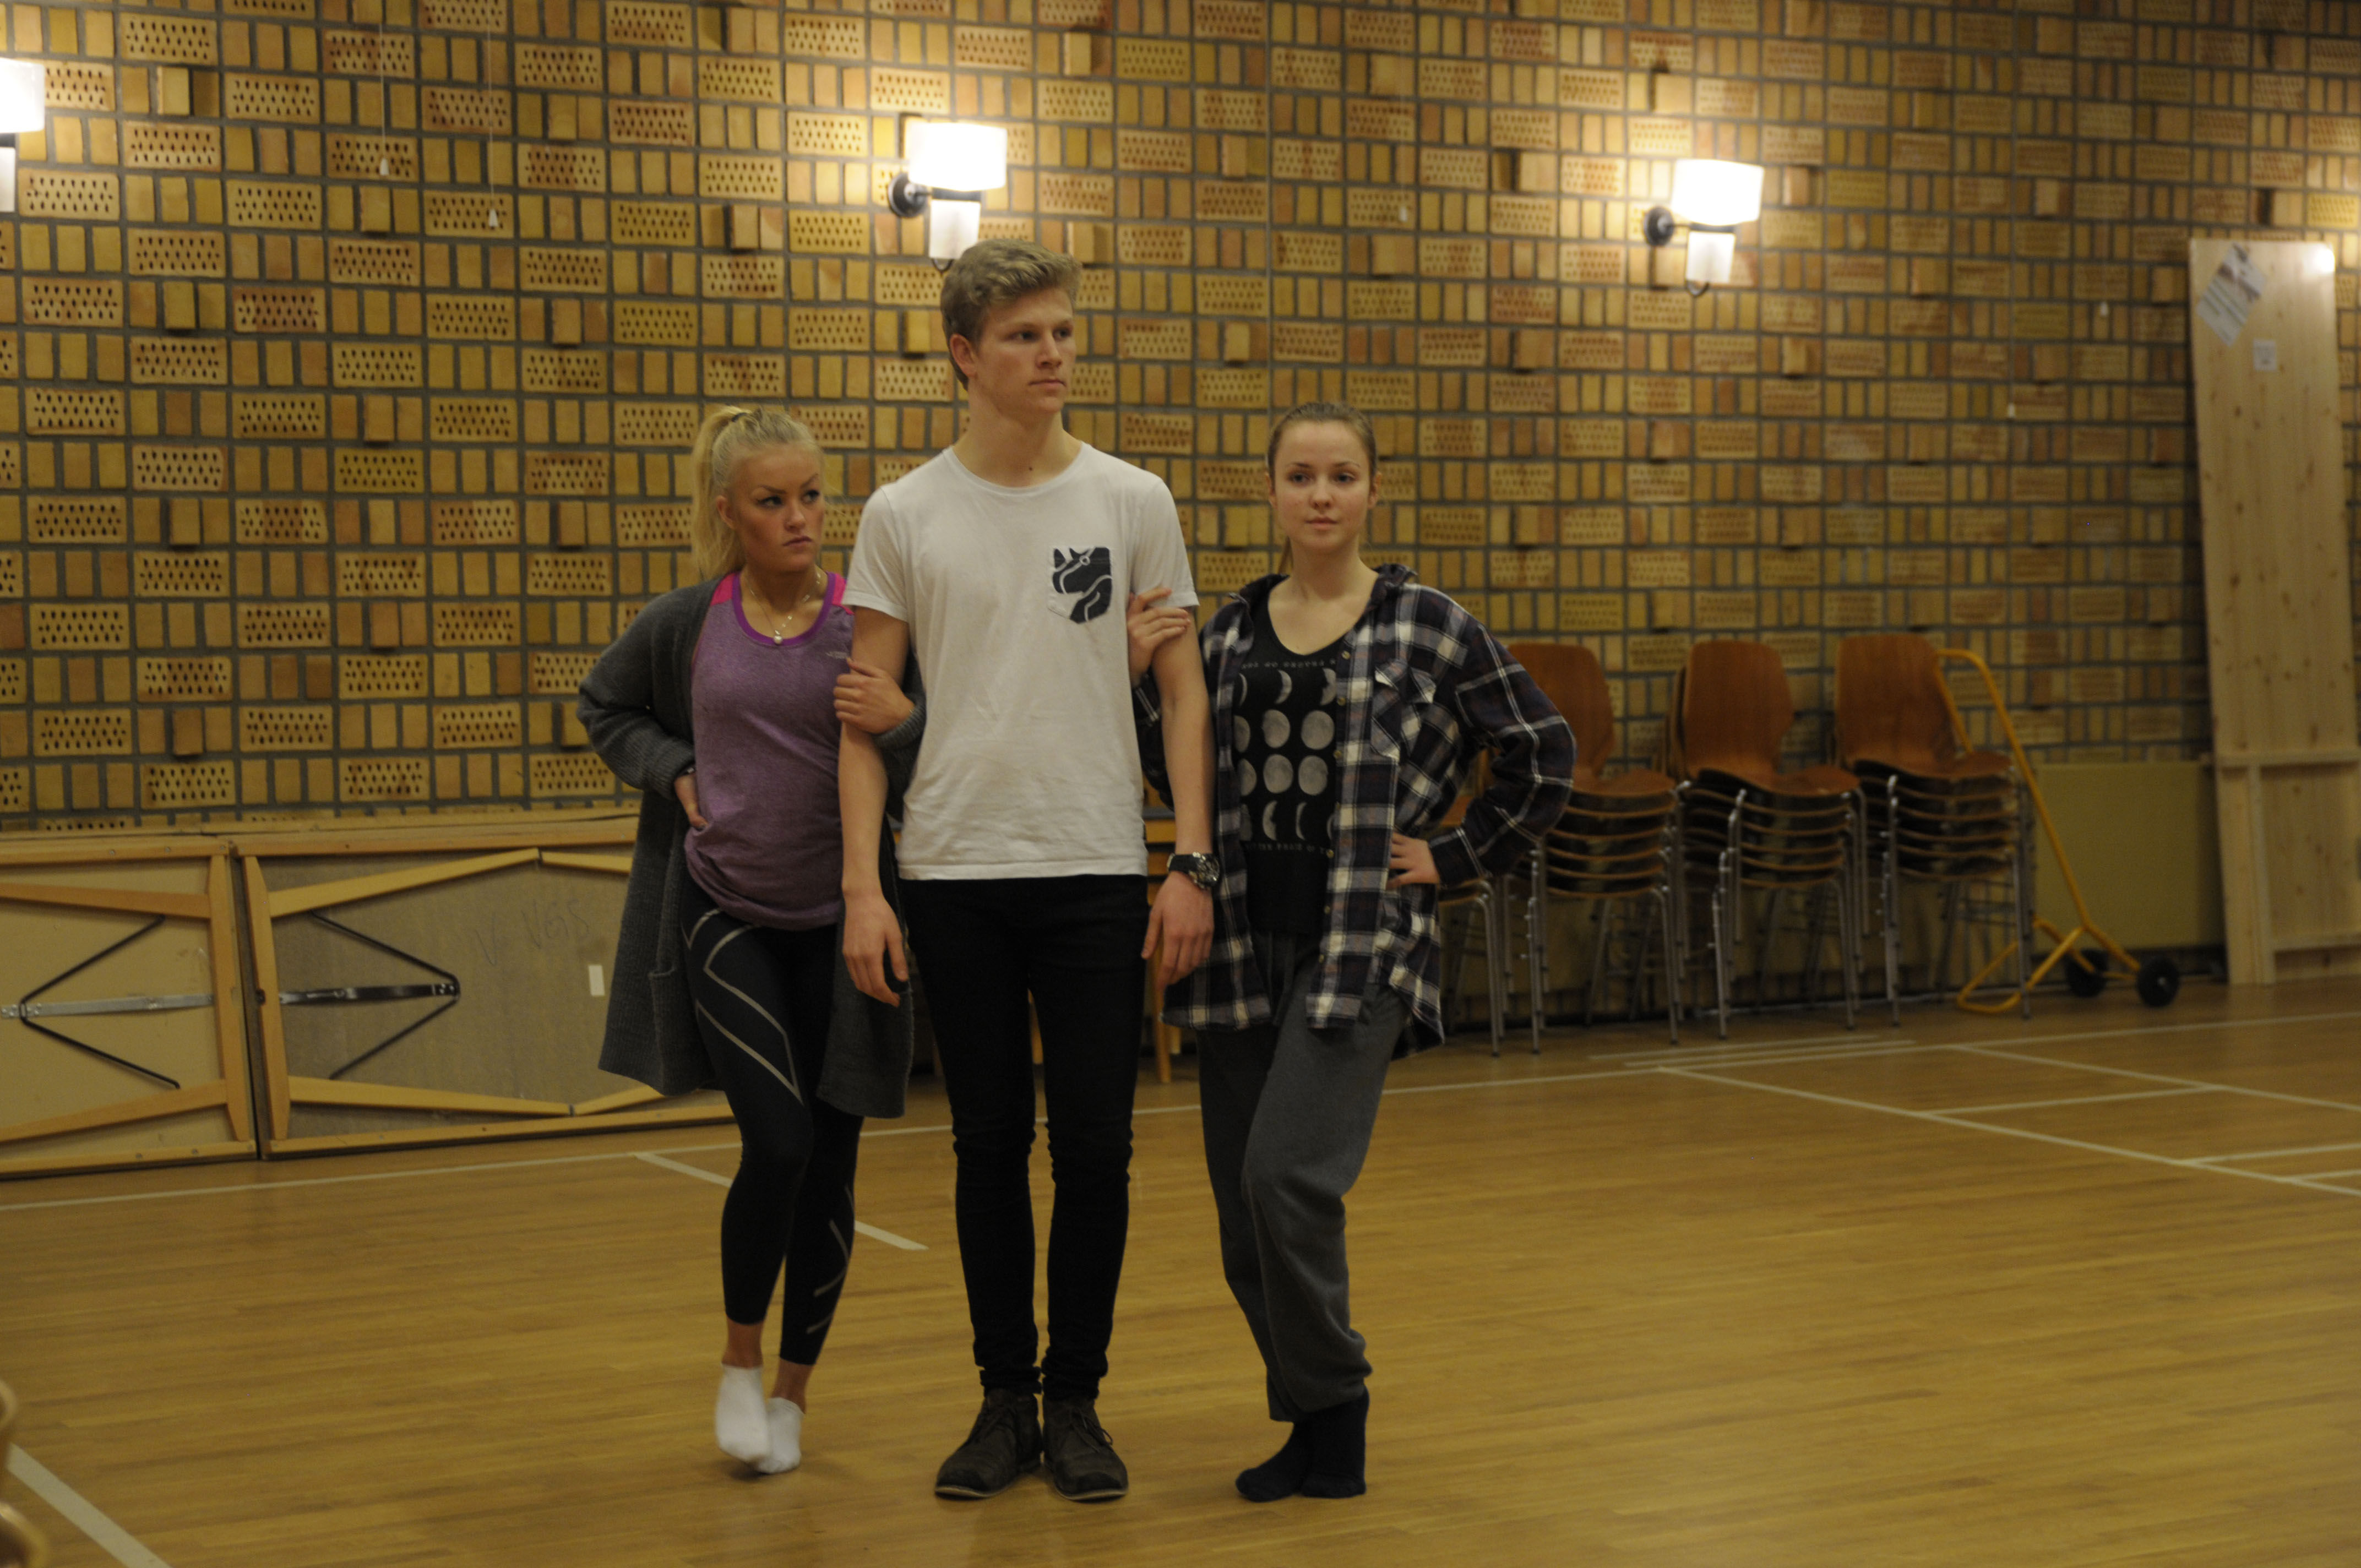 Full konsentrasjon på dramaøving. Frå venstre: Maria Kårstad , Tomas Håndlykken og Sigrid Vassbotn